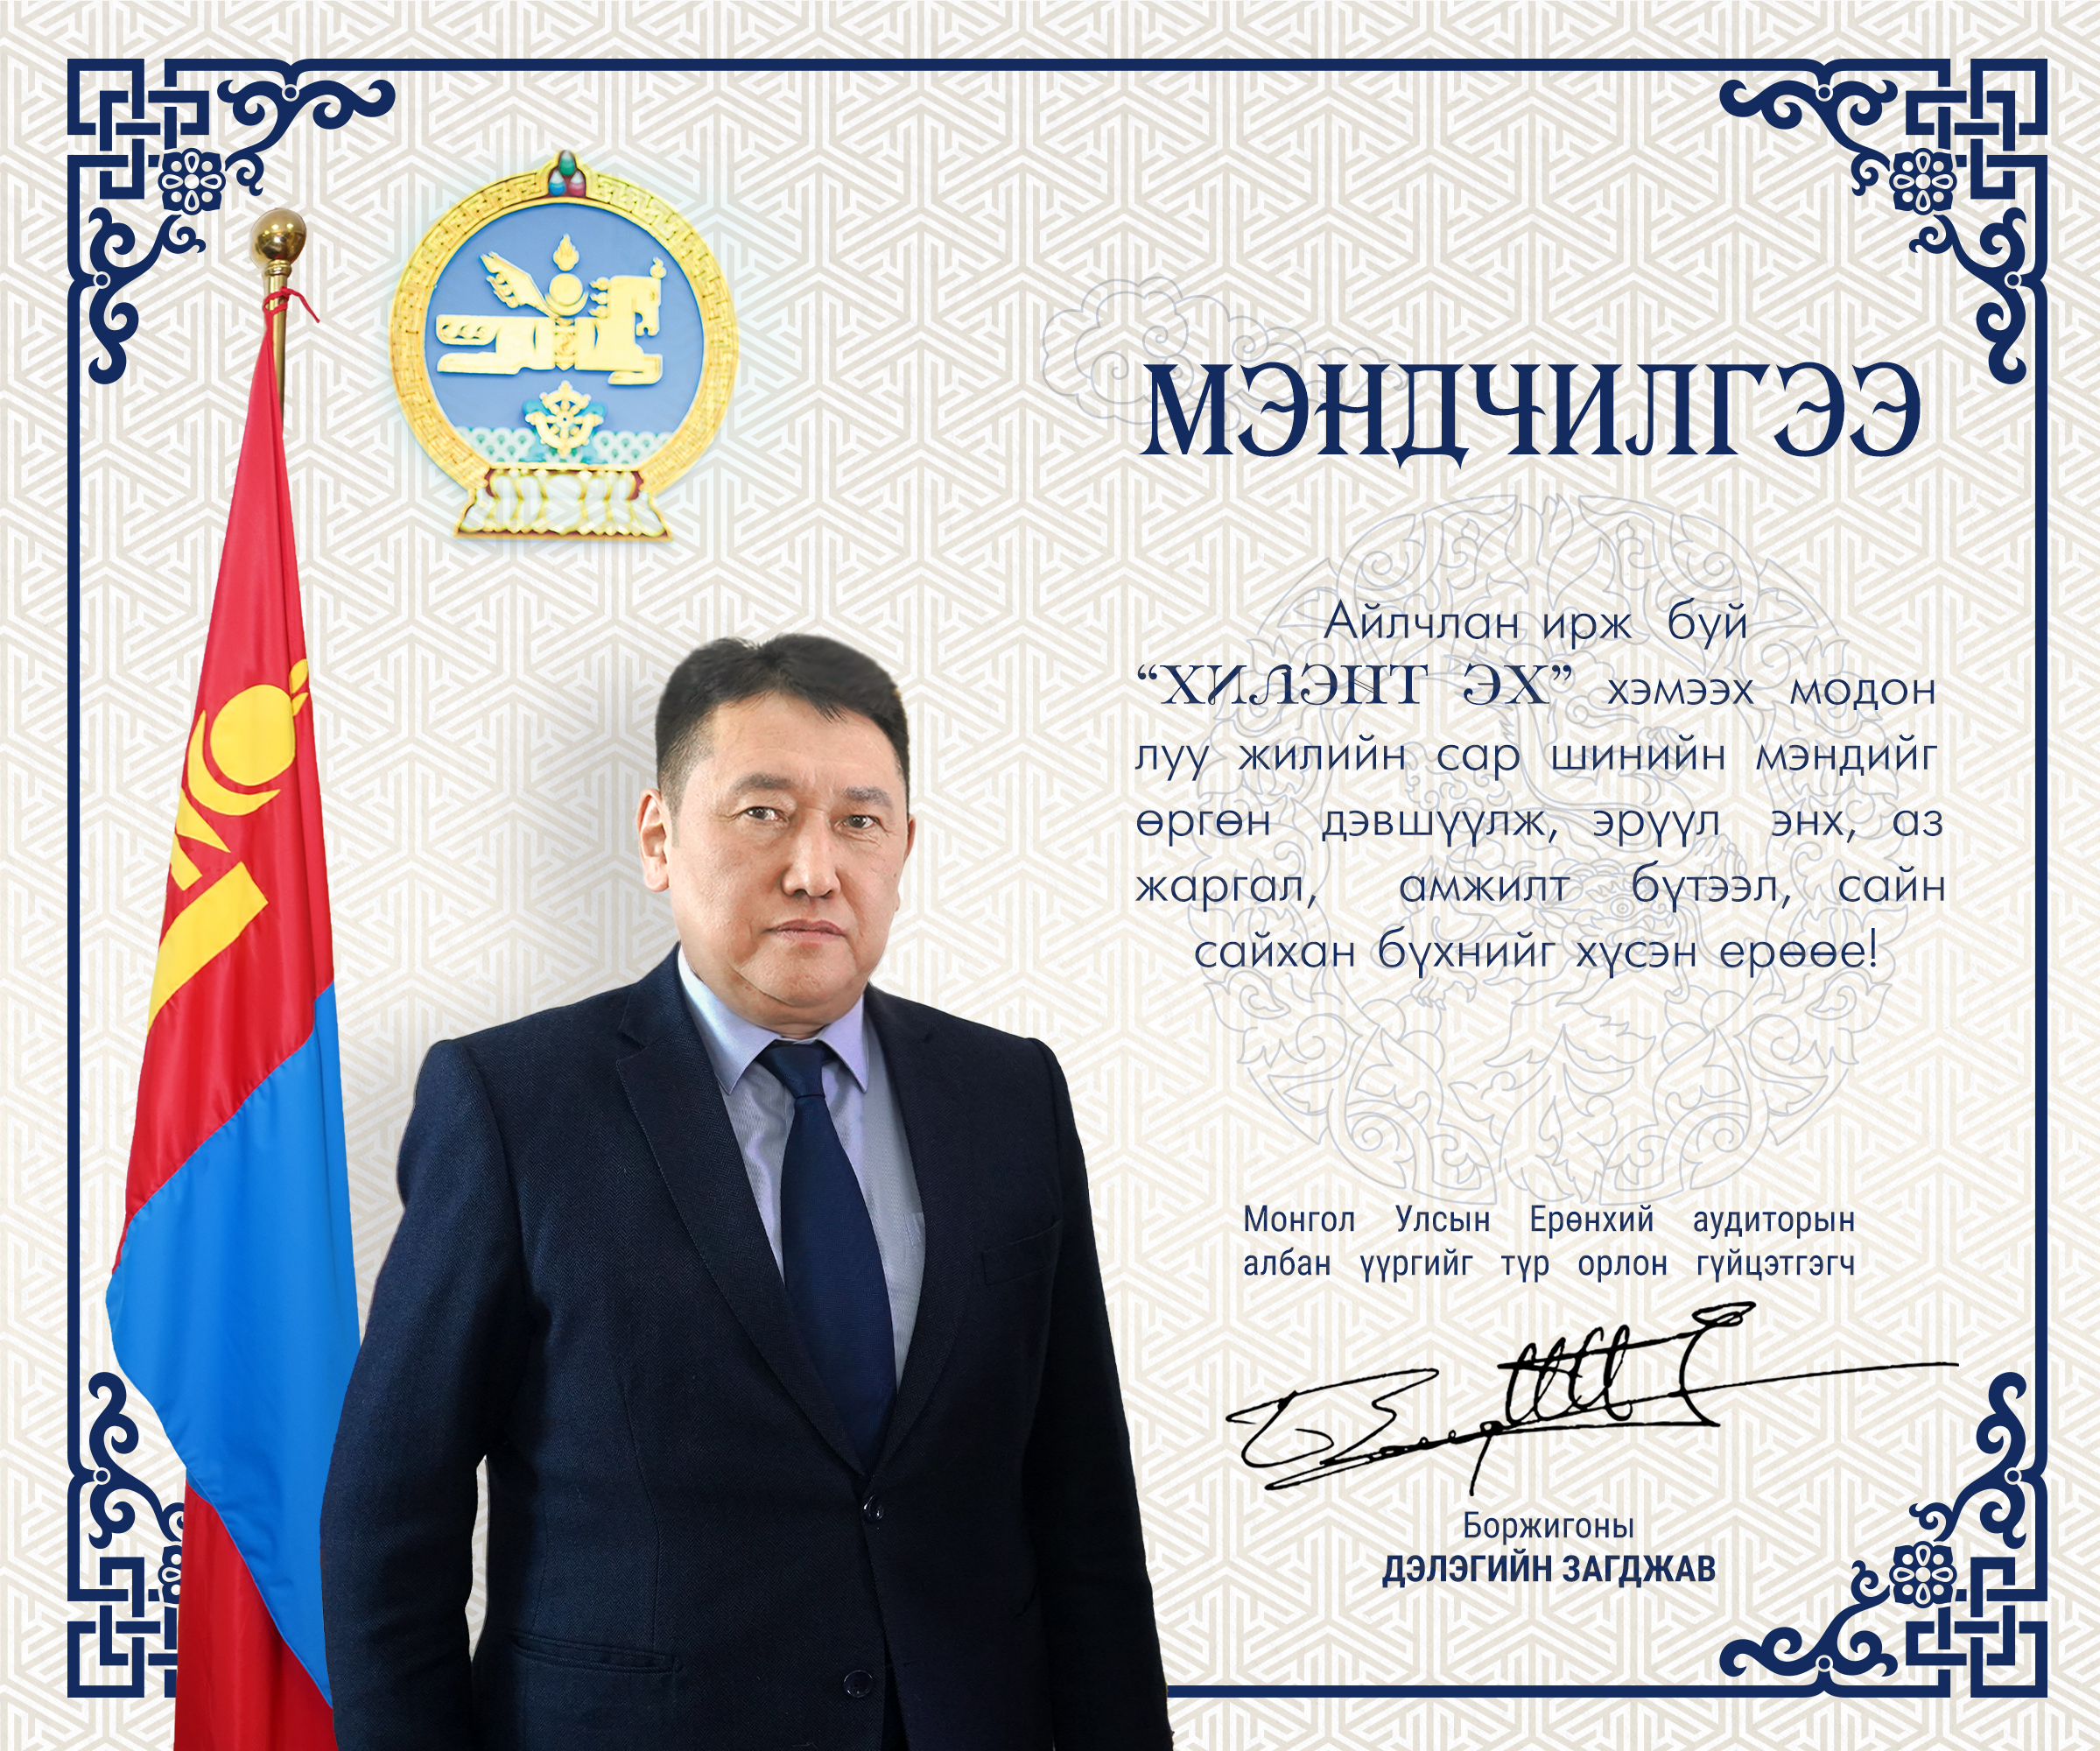 Монгол Улсын Ерөнхий аудиторын албан үүргийг түр орлон гүйцэтгэгч Д.Загджавын сар шинийн мэндчилгээ